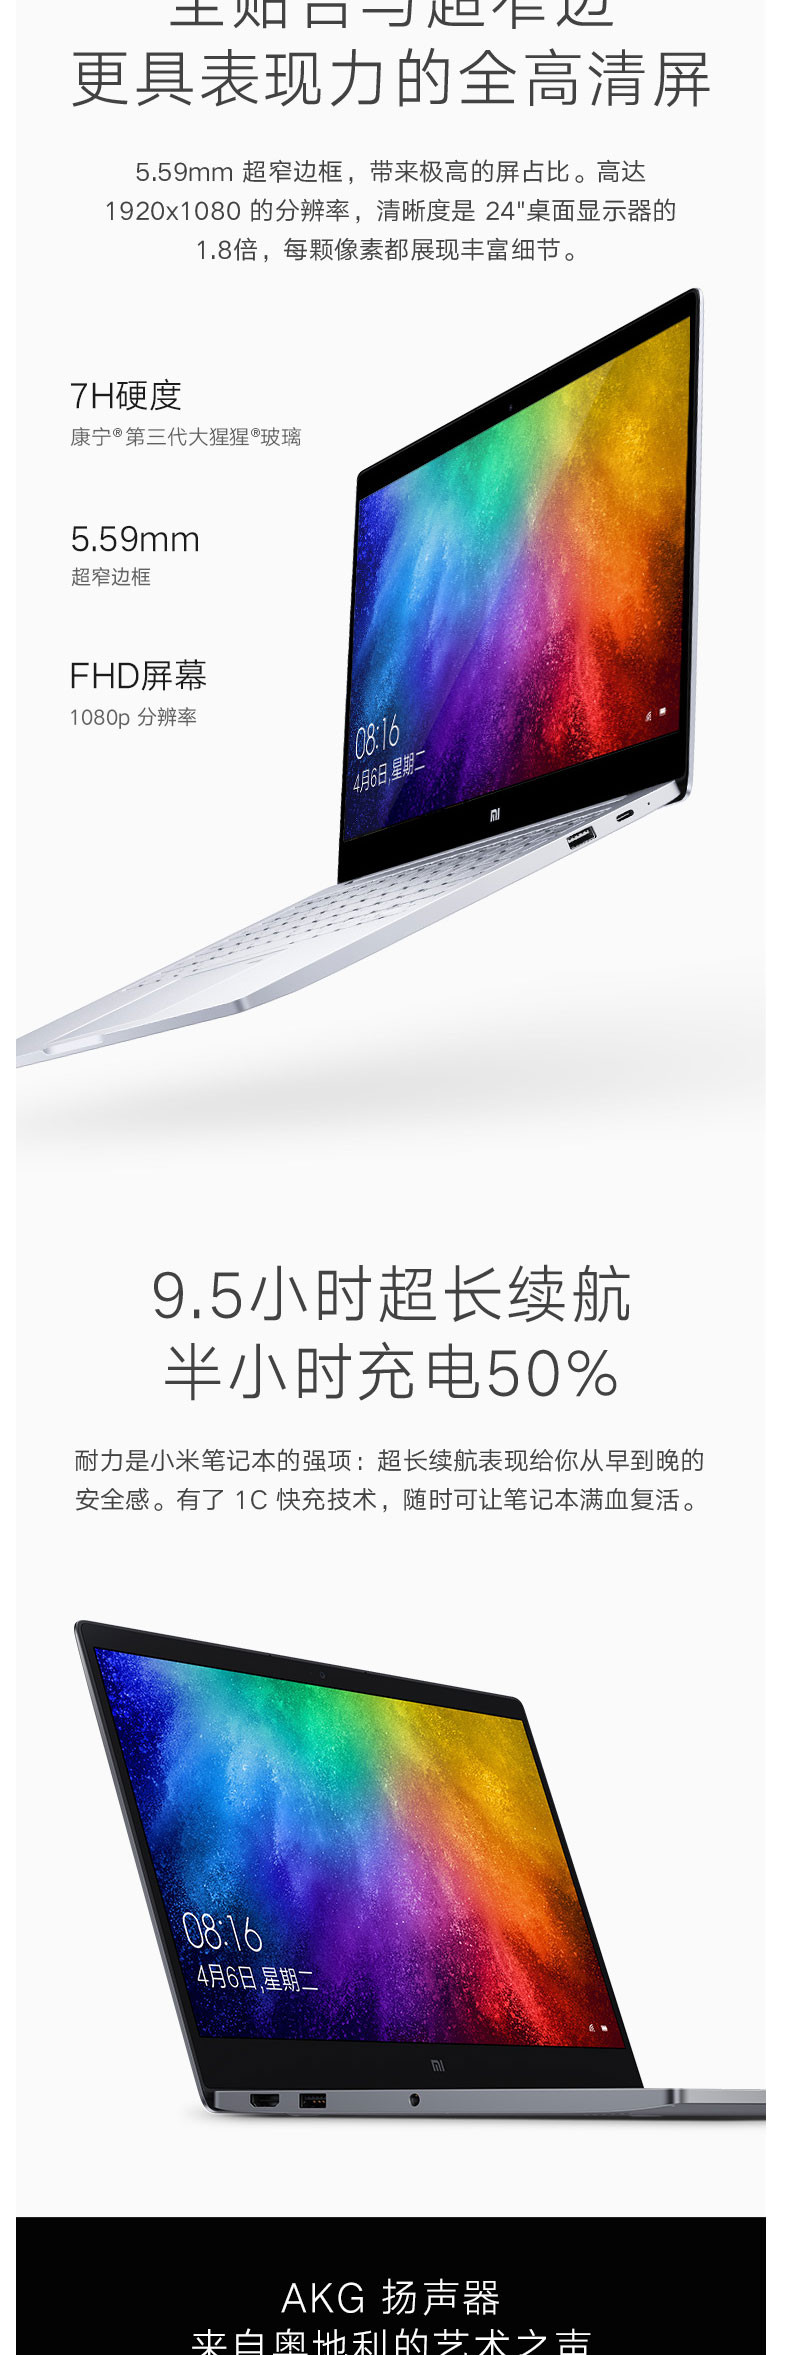 小米/MIUI Air 13.3英寸全金属超轻薄笔记本电脑/i7-8550U 8G 256G灰色银色